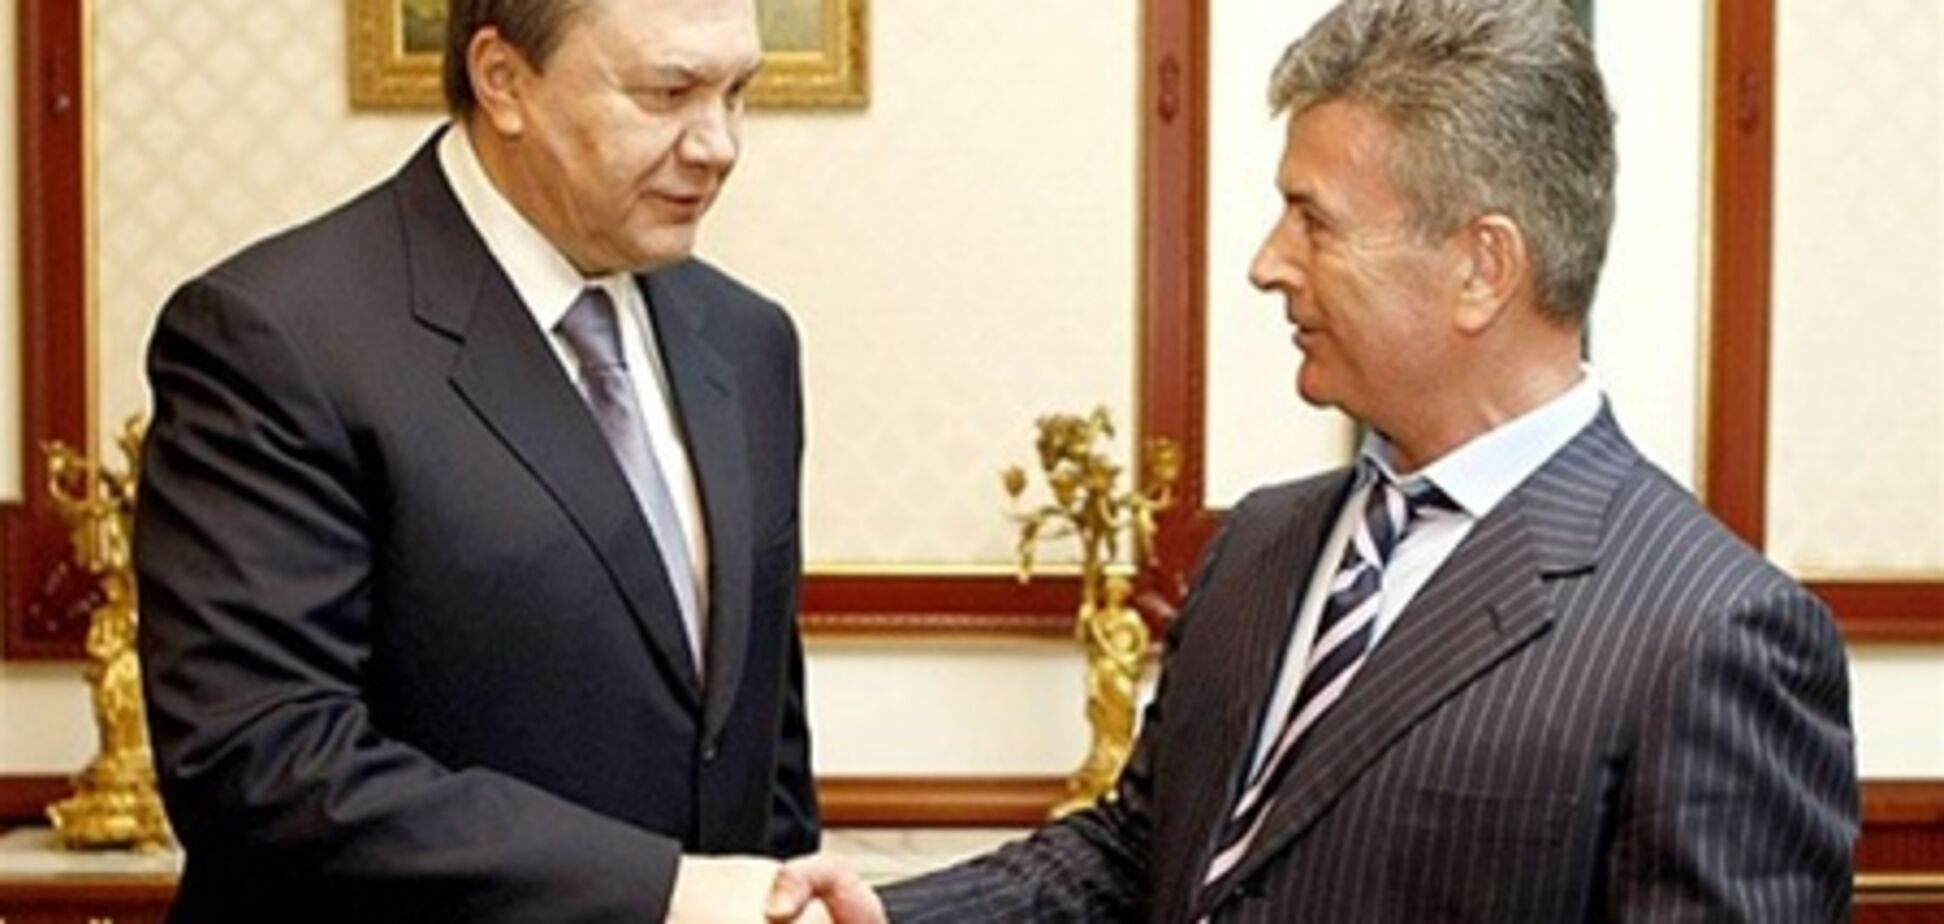 Онопенко говорит, что Янукович не влиял на закрытие дел против его семьи 